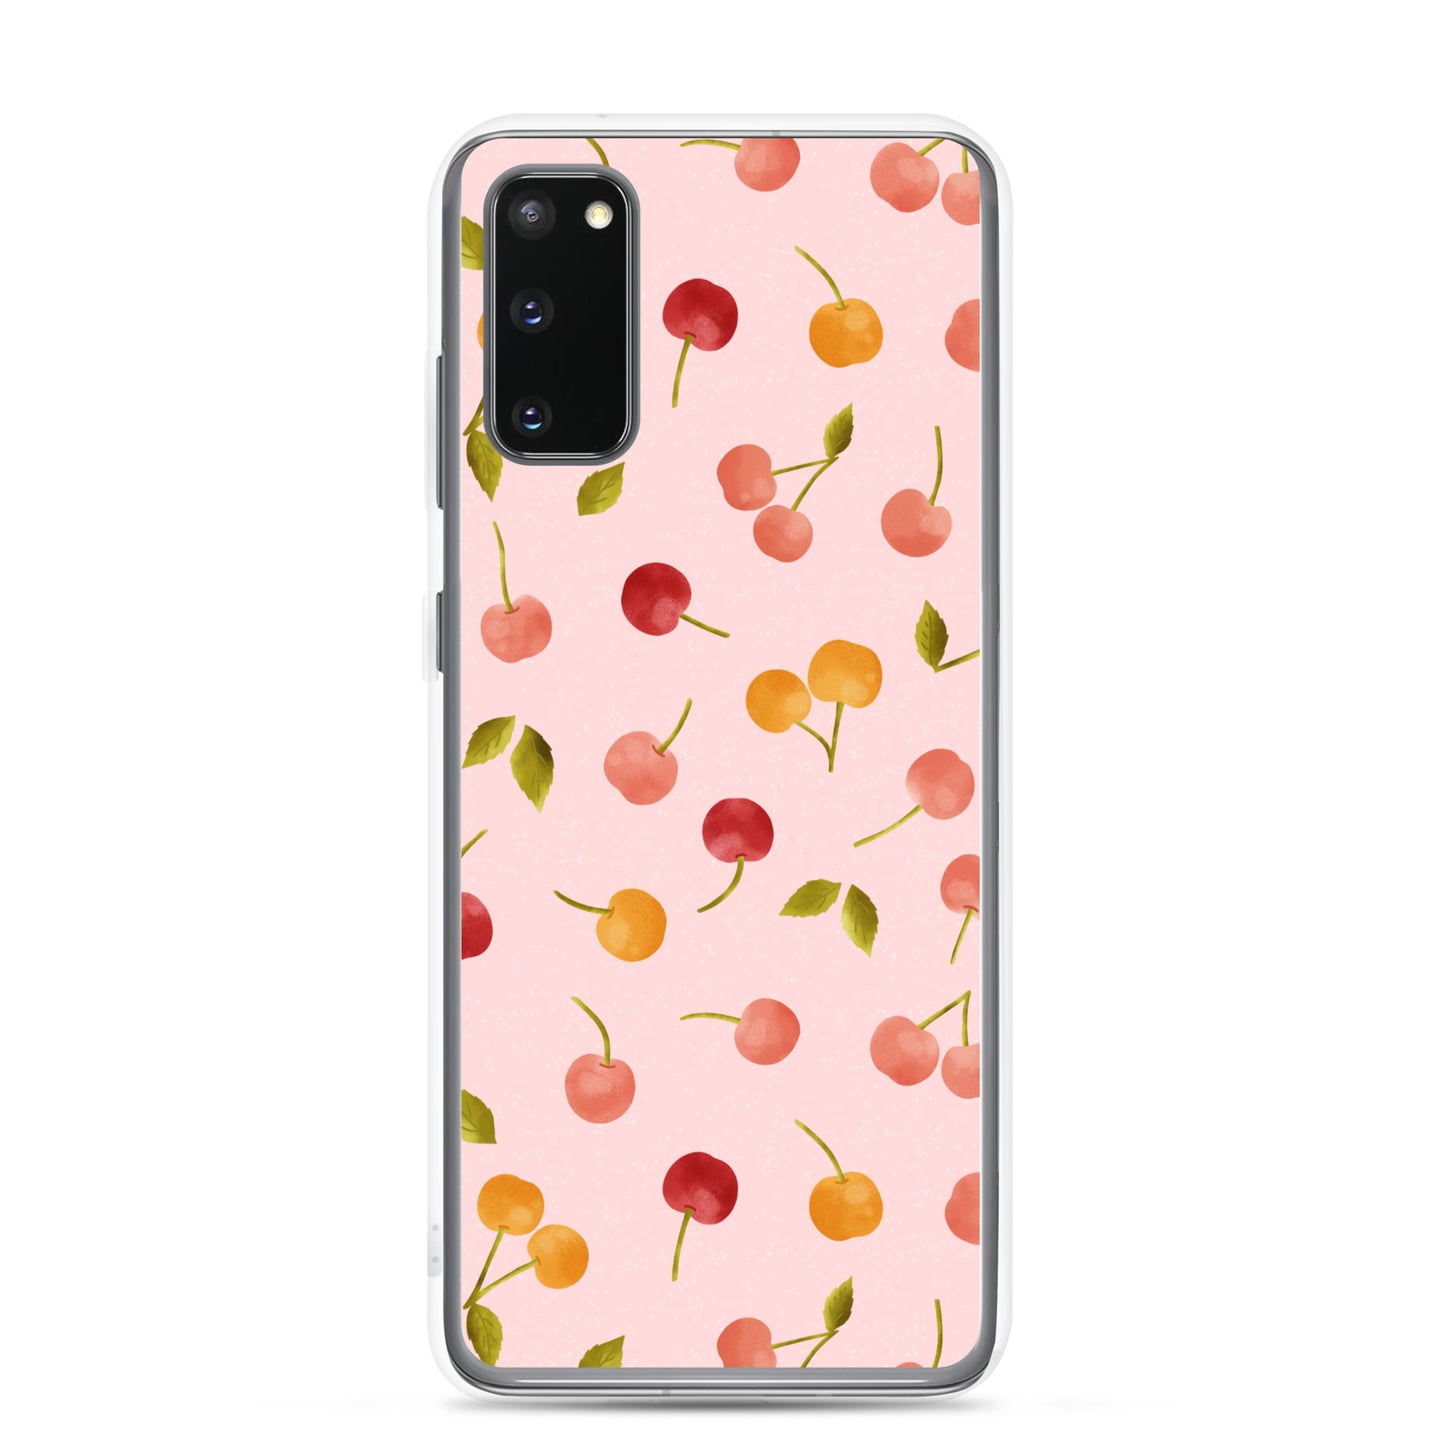 Cherries Samsung case